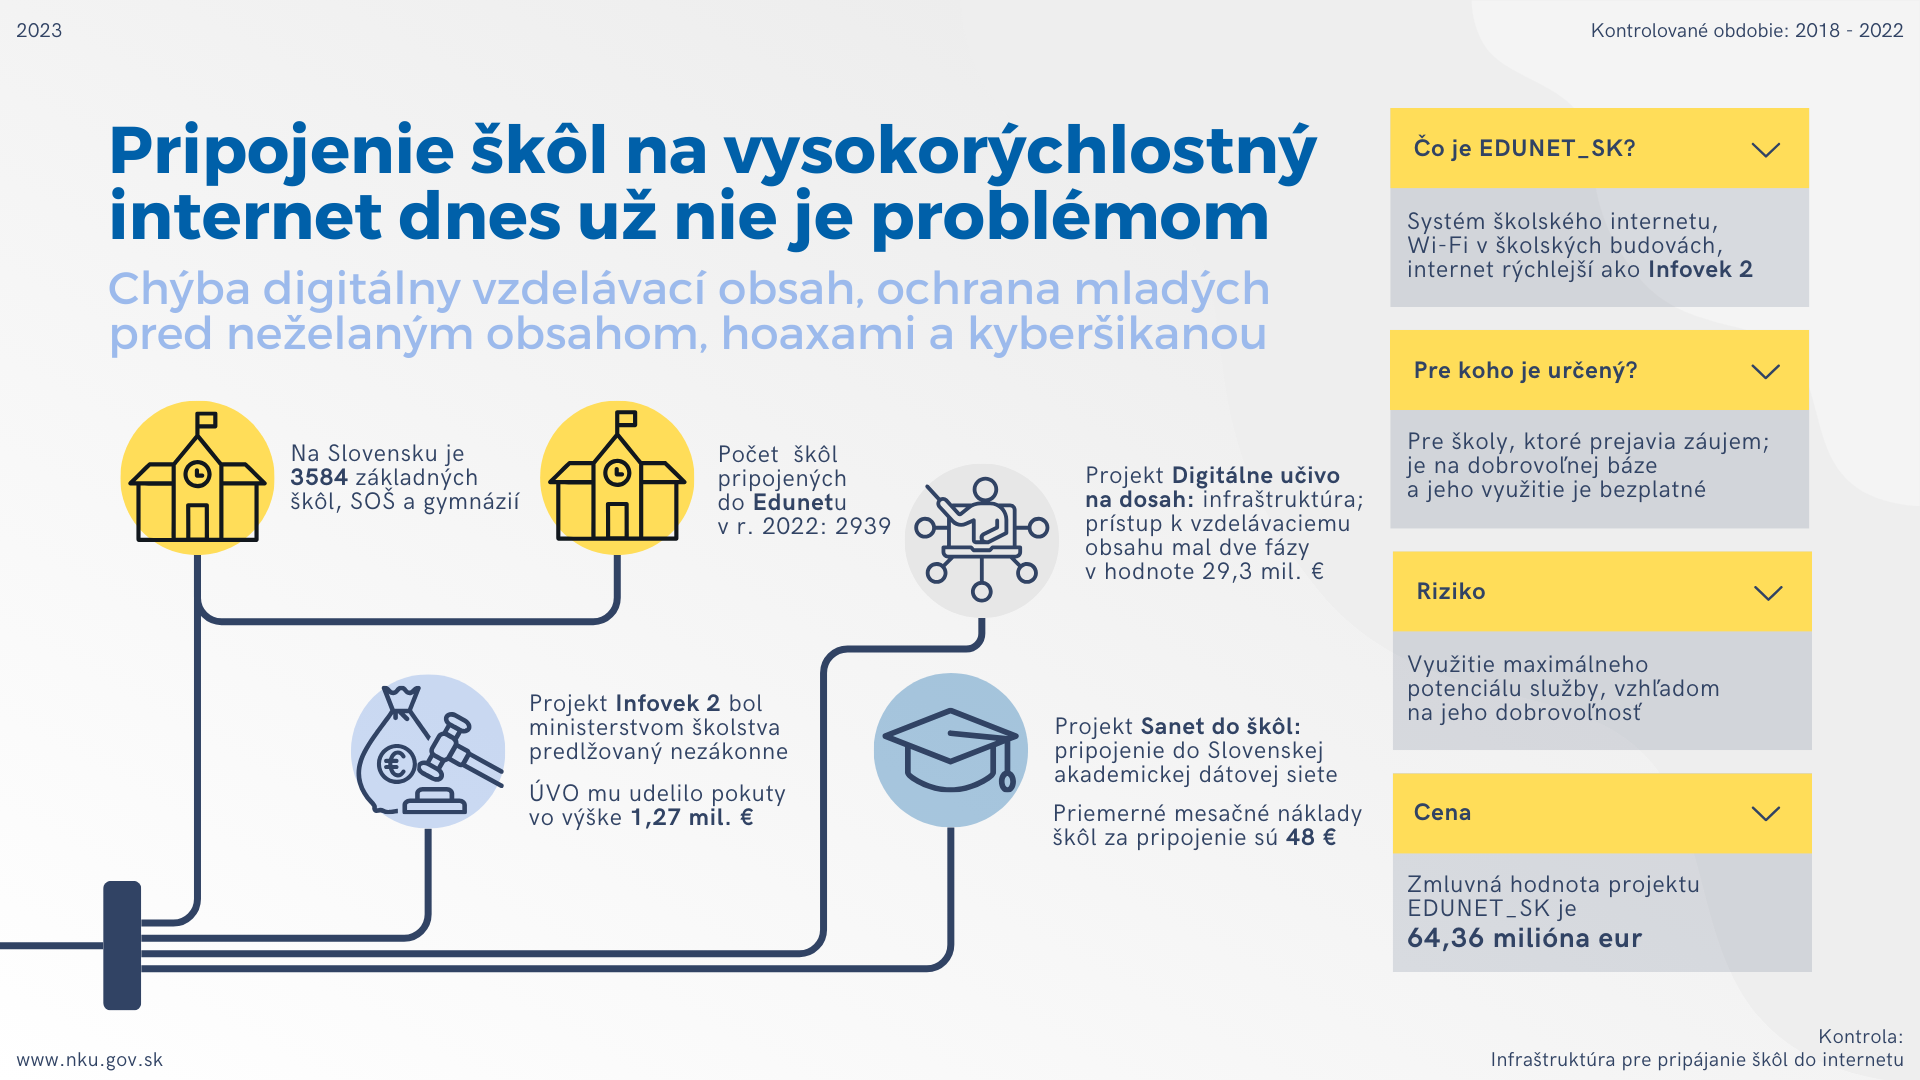 Infografika: Kontrola: Infraštruktúra pre pripájanie škôl do internetu  Kontrolované obdobie: 2018 - 2022    Pripojenie škôl na vysokorýchlostný internet dnes už nie je problémom; Chýba digitálny vzdelávací obsah, ochrana mladých pred neželaným obsahom, hoaxami a kyberšikanou;  Na Slovensku je 3584 základných škôl, SOŠ a gymnázií; Počet škôl pripojených do Edunetu v r. 2022: 2939; Projekt Digitálne učivo na dosah: infraštruktúra; prístup k vzdelávaciemu obsahu mal dve fázy  v hodnote 29,3 mil. €; Projekt Sanet do škôl: pripojenie do Slovenskej akademickej dátovej siete; Priemerné mesačné náklady škôl za pripojenie sú 48 €; Projekt Infovek 2 bol ministerstvom školstva predlžovaný nezákonne; ÚVO mu udelilo pokuty vo výške 1,27 mil. €.   Čo je EDUNET_SK?  Systém školského internetu,  Wi-Fi v školských budovách, internet rýchlejší ako Infovek 2, Pre koho je určený?  Pre školy, ktoré prejavia záujem; je na dobrovoľnej báze a jeho využitie je bezplatné, Riziko Využitie maximálneho potenciálu služby, vzhľadom na jeho dobrovoľnosť  Cena  Zmluvná hodnota projektu EDUNET_SK je 64,36 milióna eur 